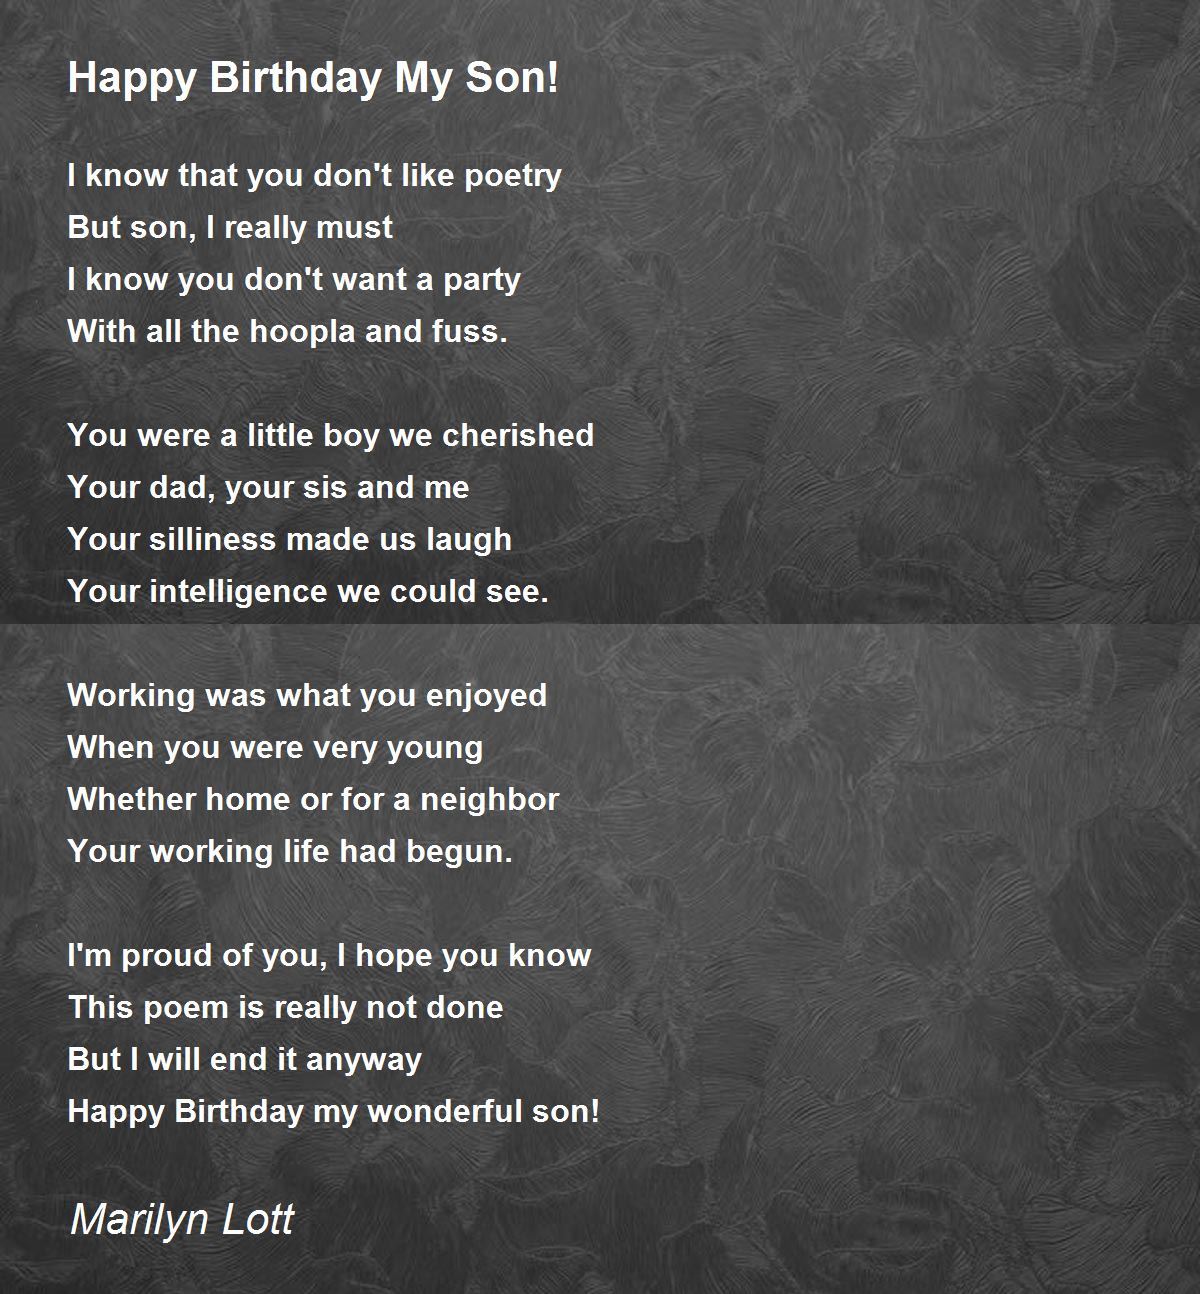 Happy Birthday My Son! - Happy Birthday My Son! Poem by Marilyn Lott